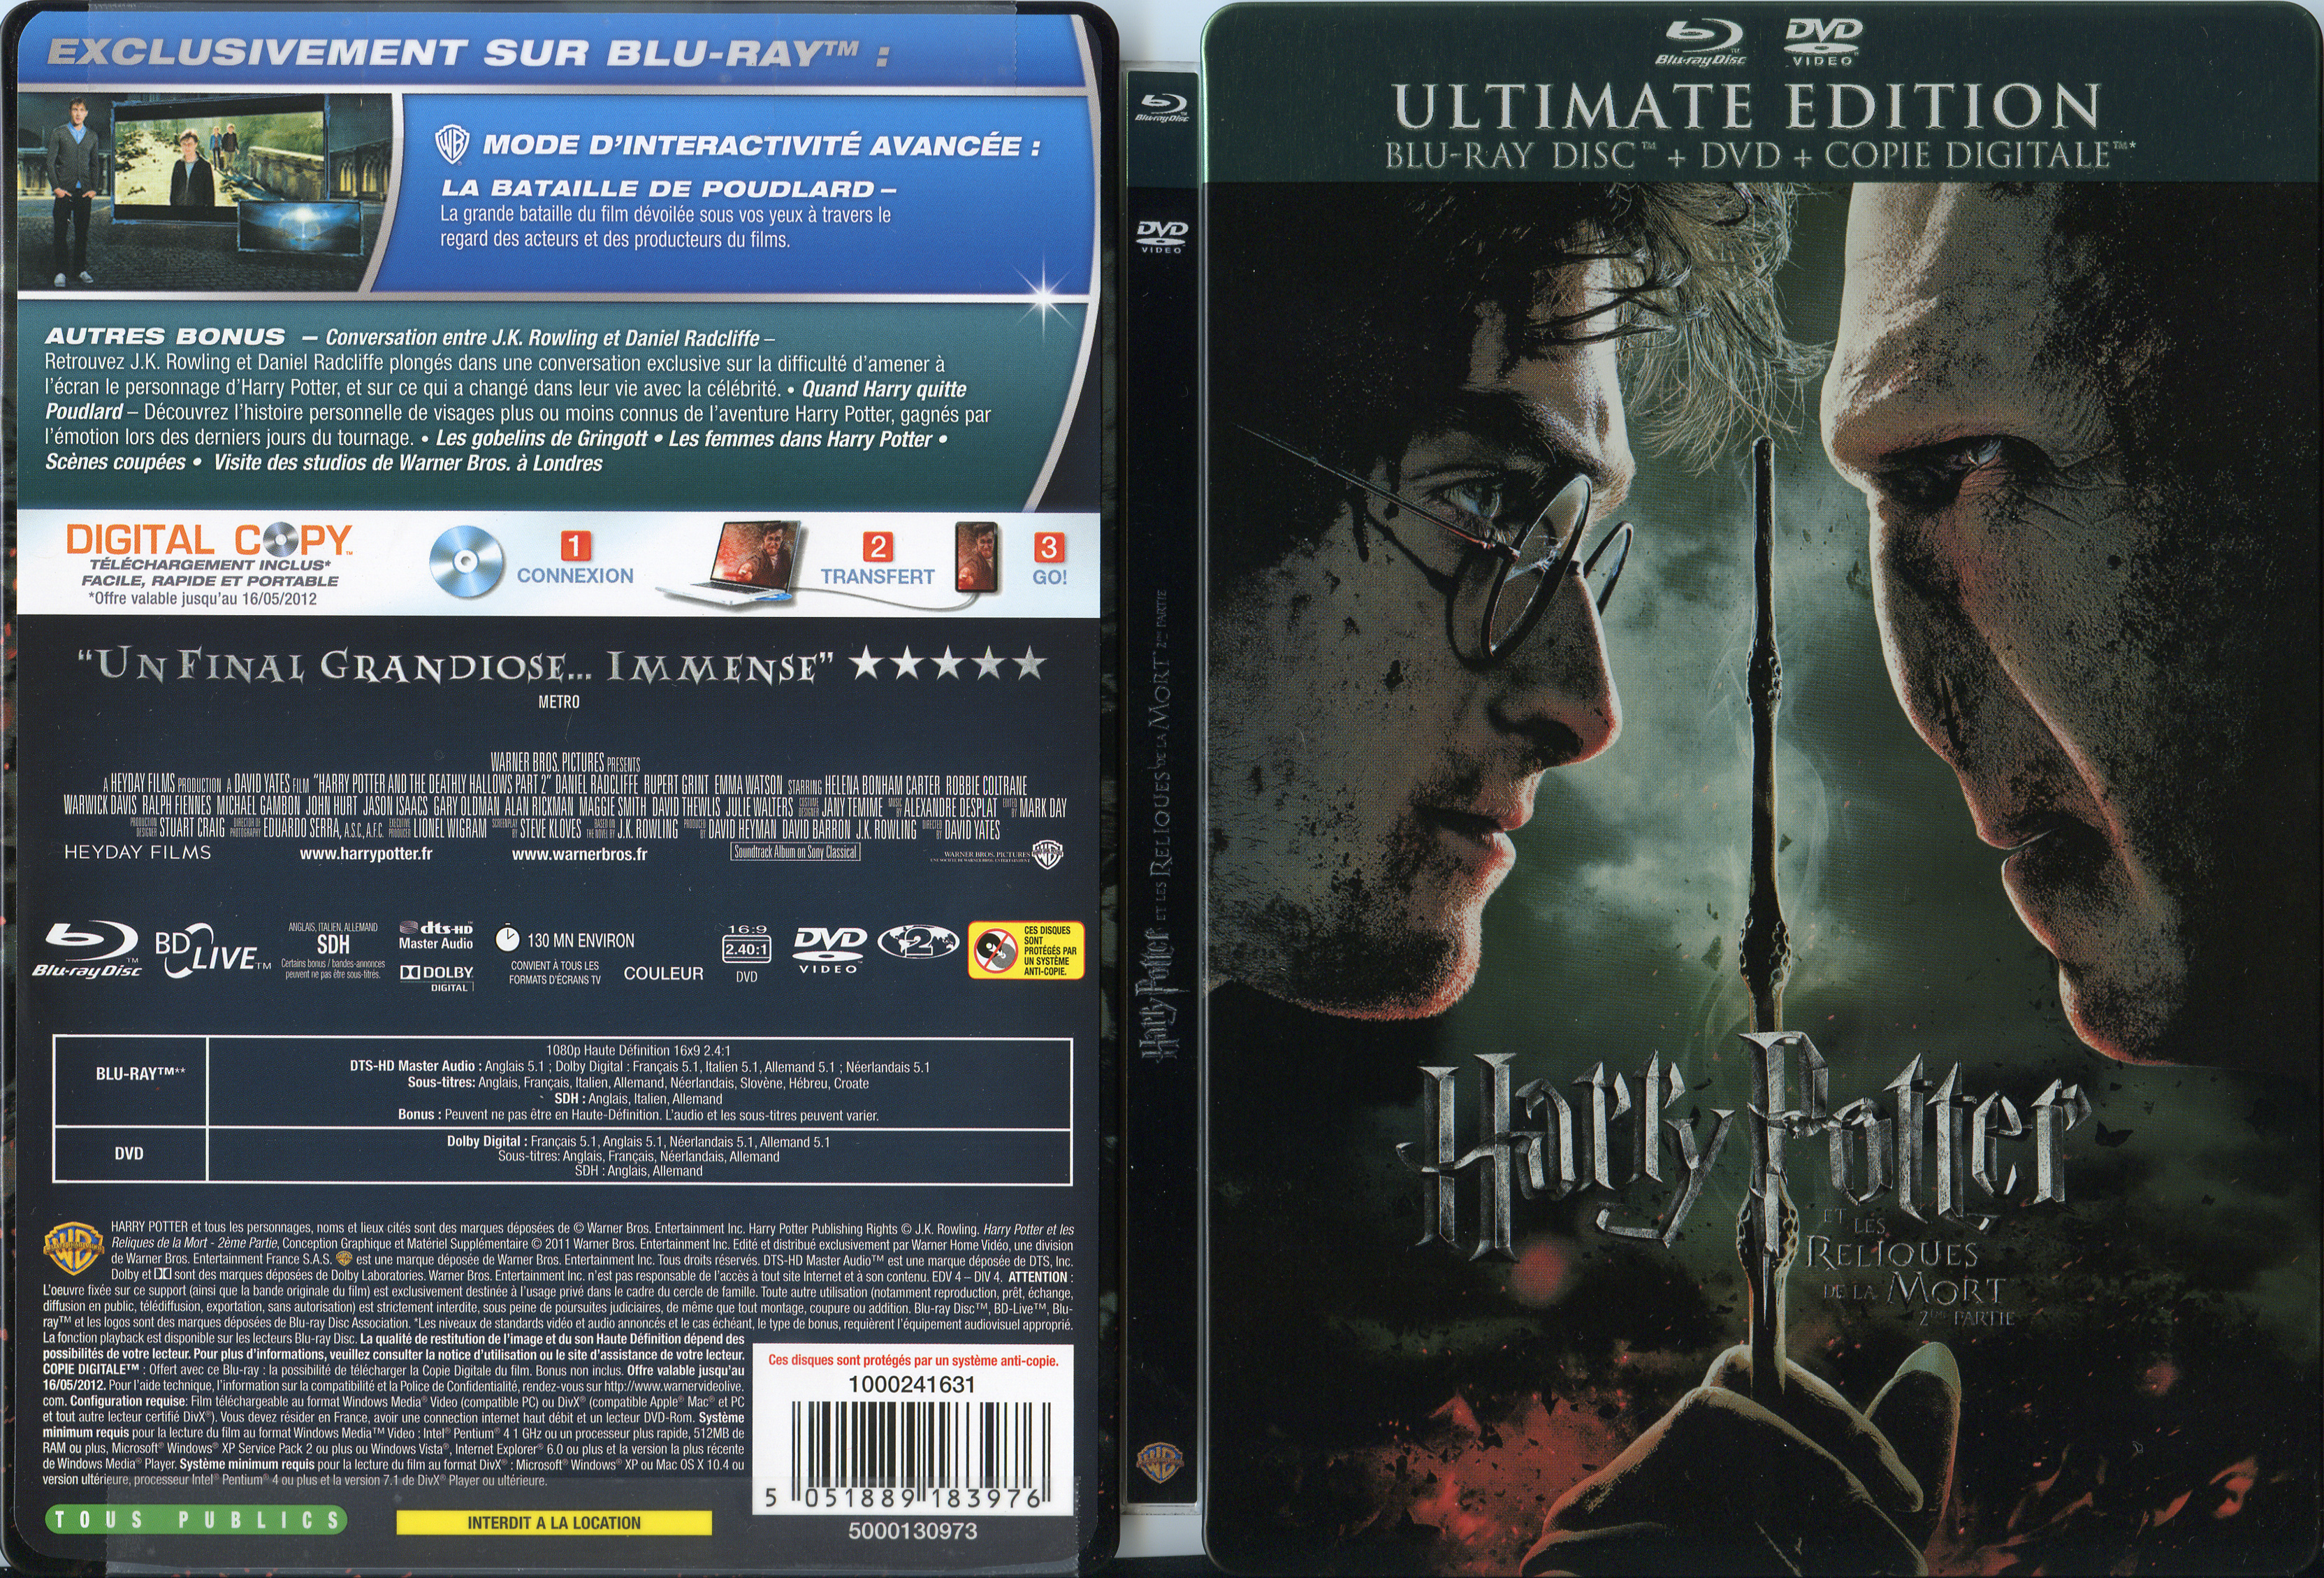 Jaquette DVD Harry Potter et les reliques de la mort - 2me partie (BLU-RAY)